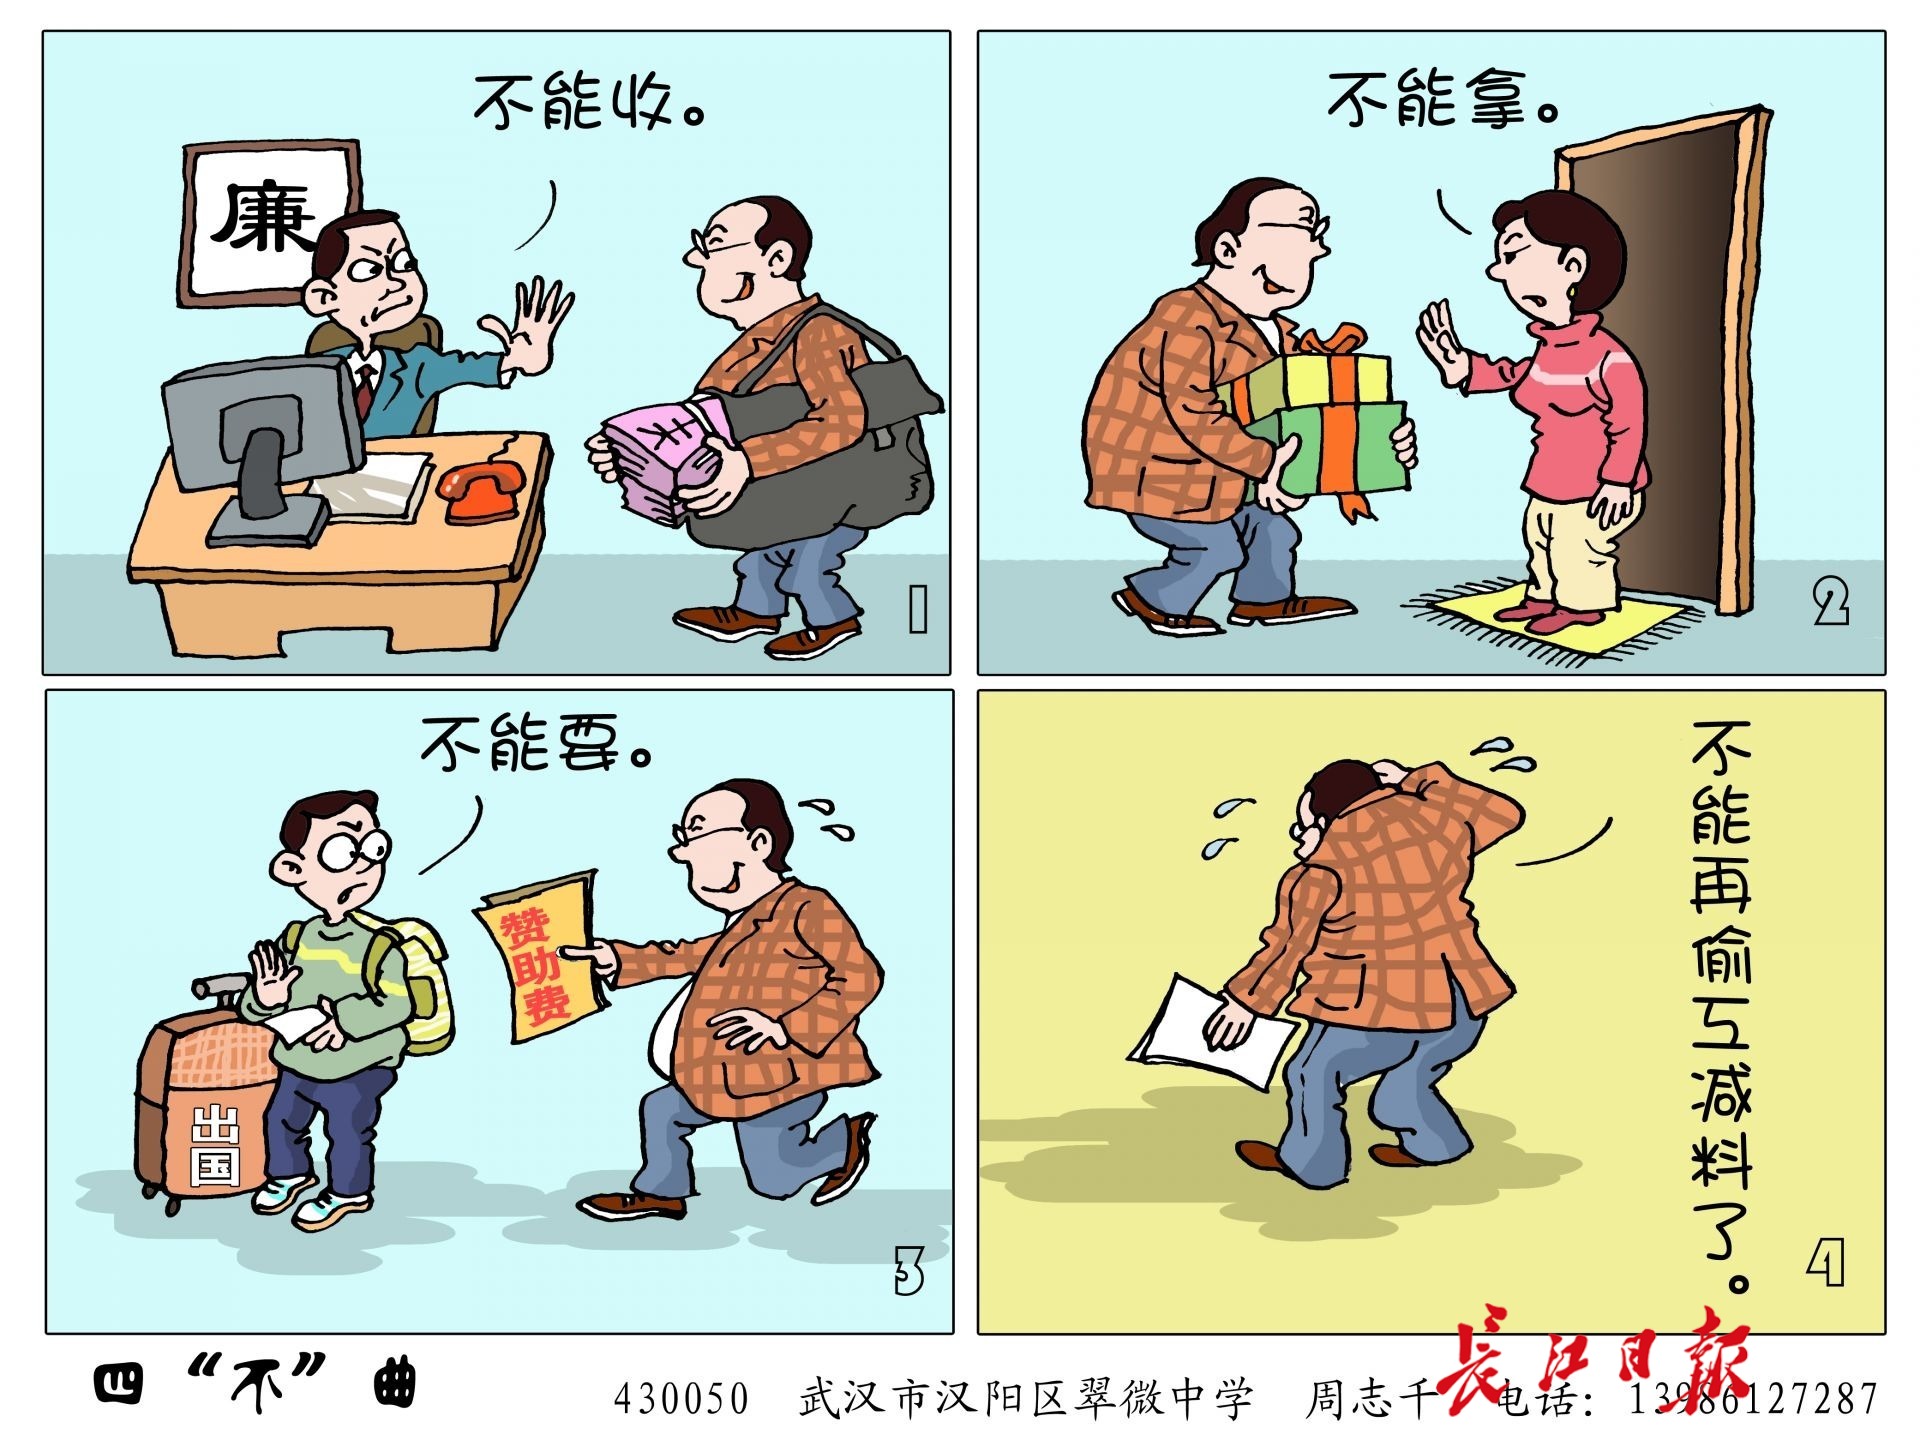 武汉一中学老师创作廉政漫画百幅,被区纪委收录推广到基层